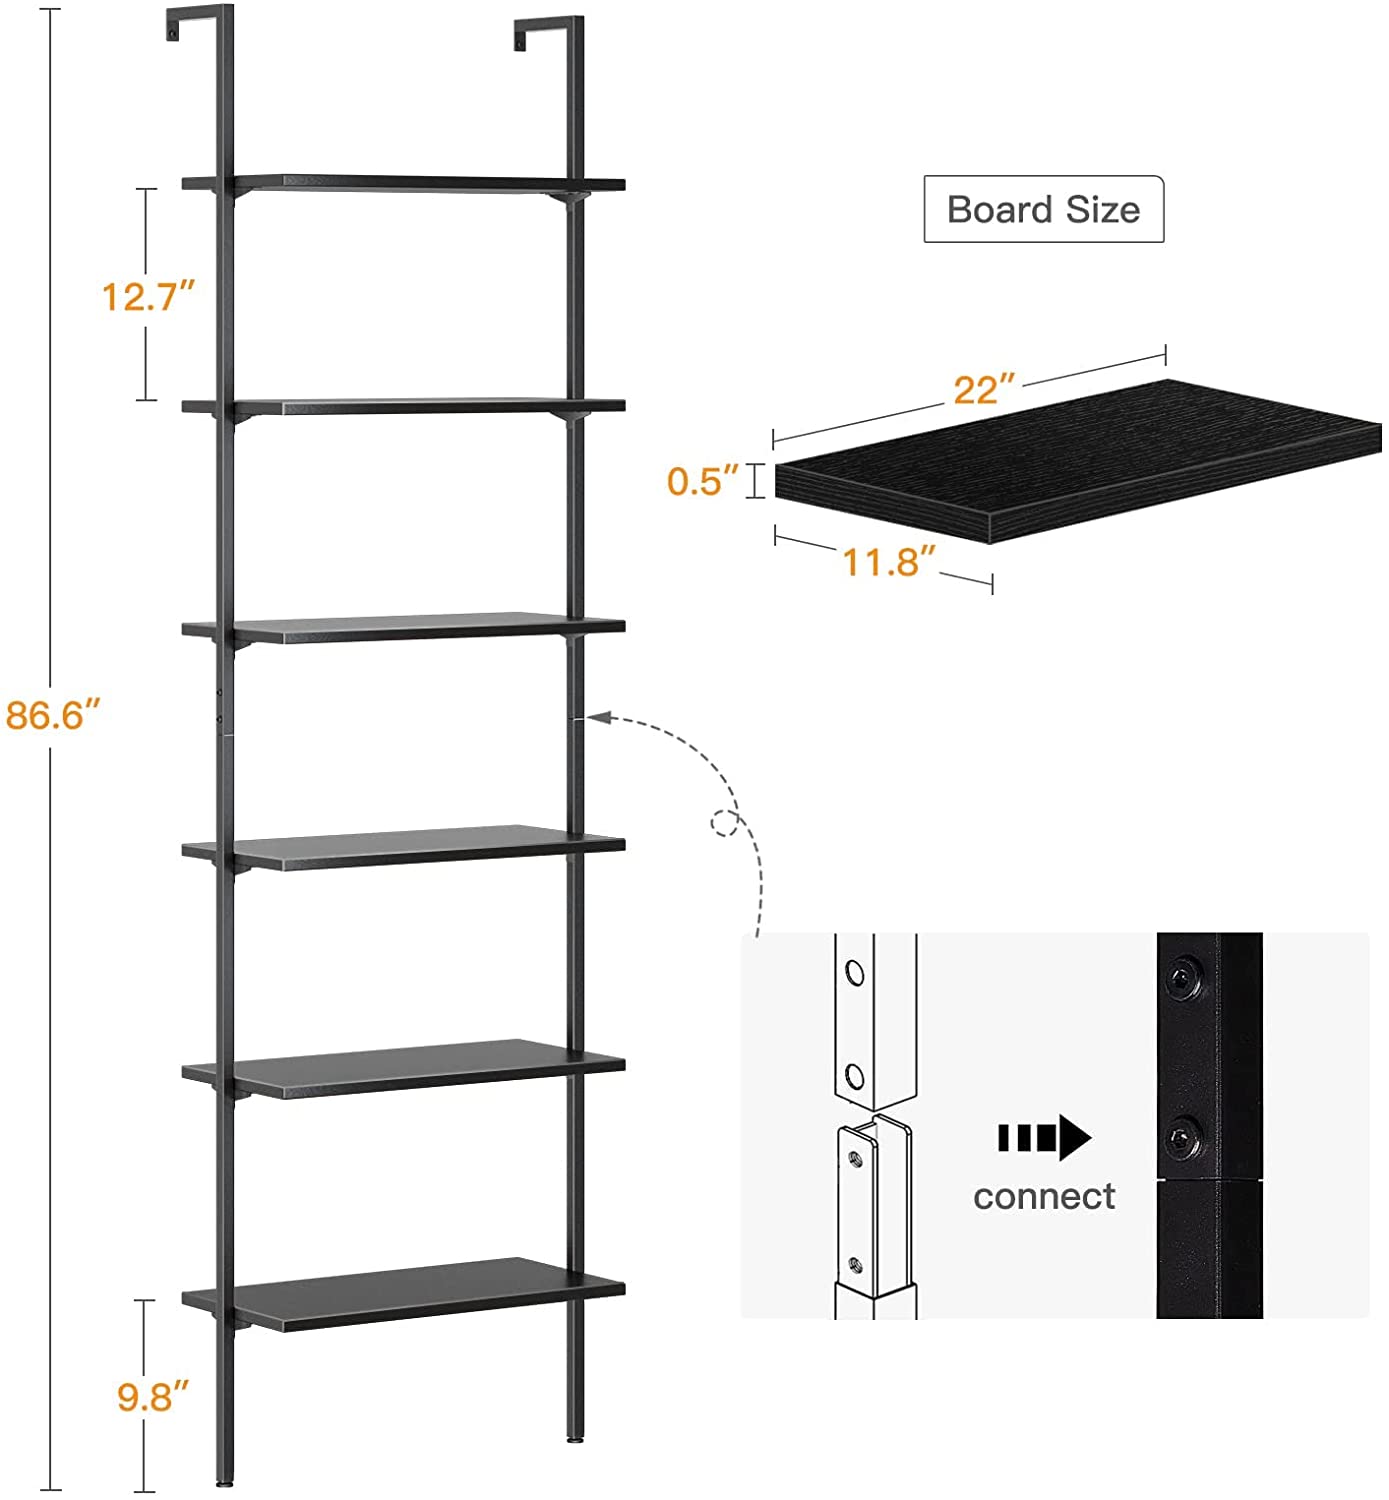 86.6" Wall Mounted Ladder Shelf